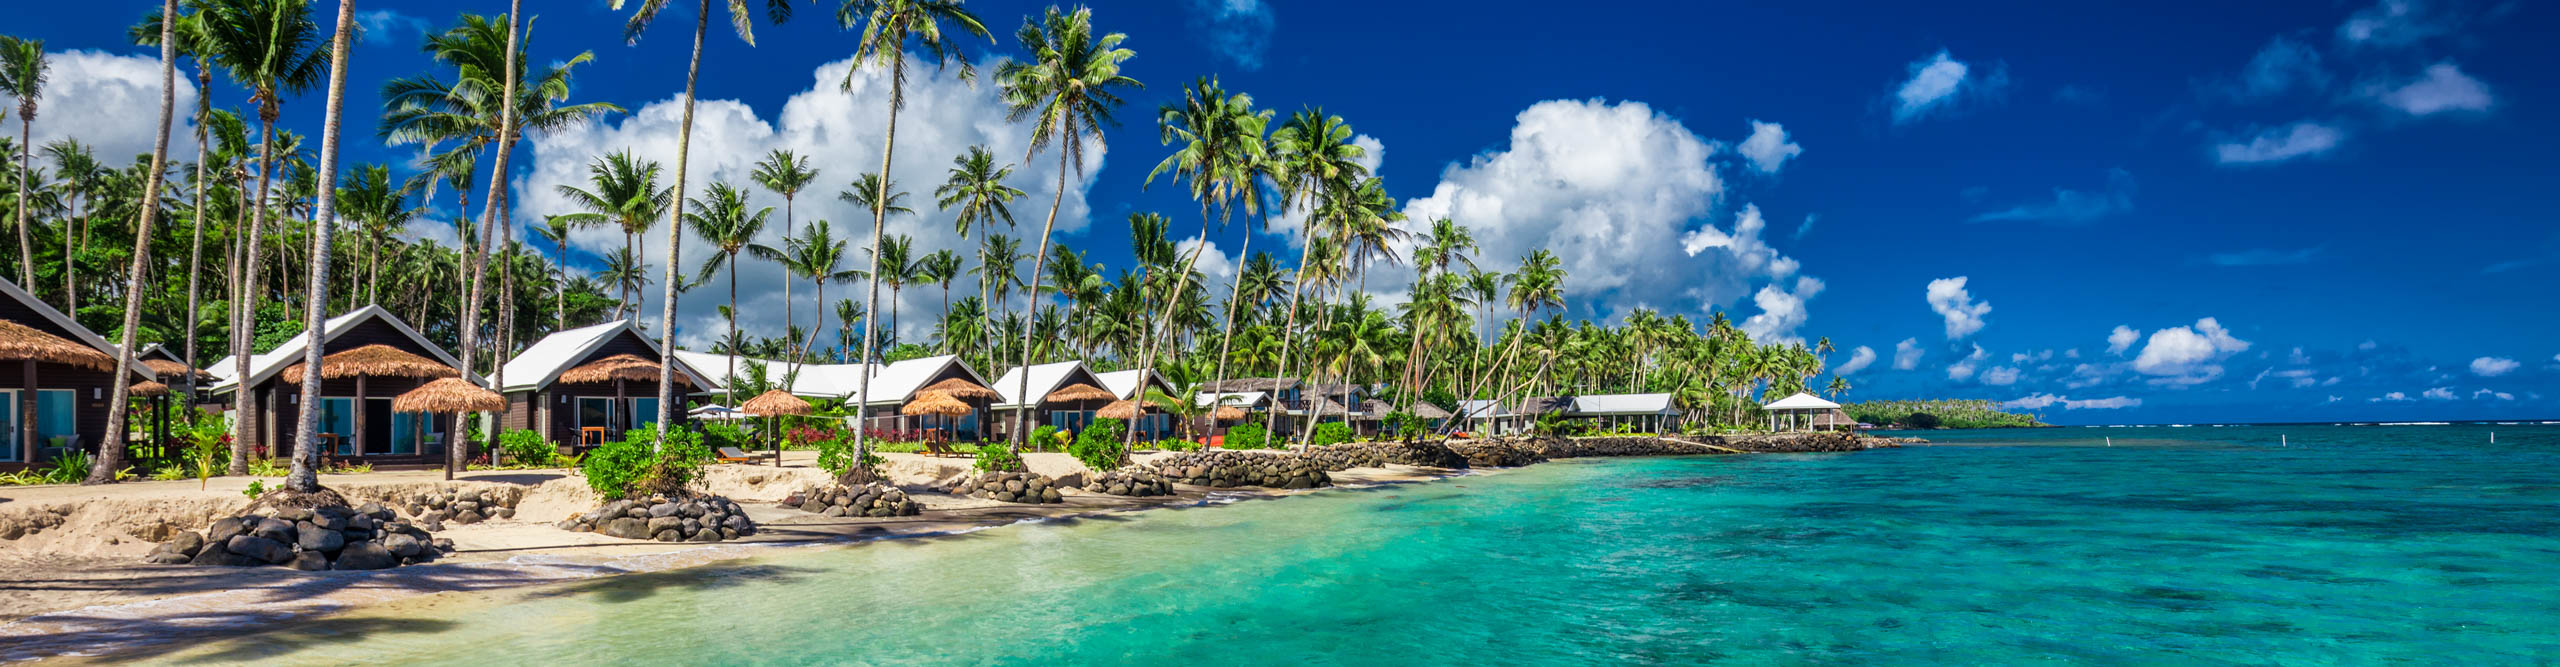 Luxury villas on the beach in Aitutaki, Samoa